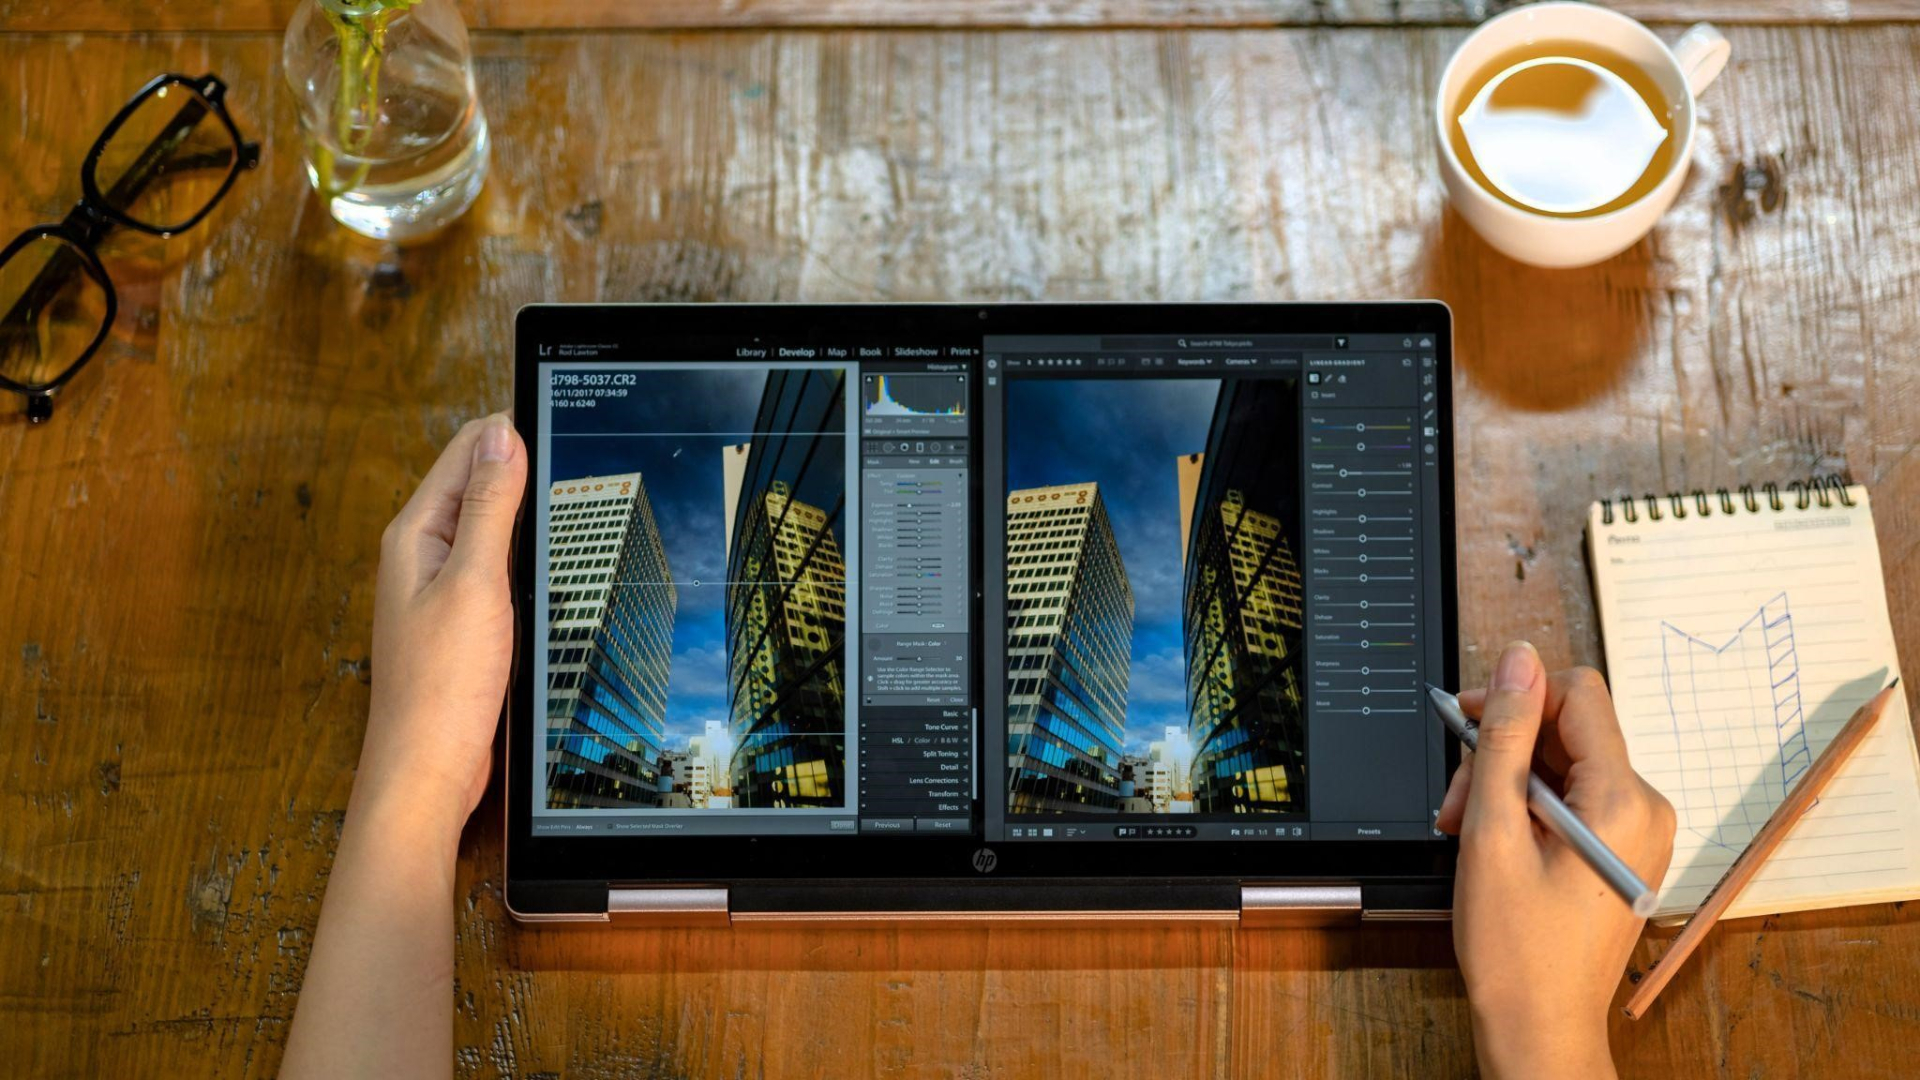 HP Pavilion x360 - Laptop kết hợp hoàn hảo giữa hiệu năng cao và tính linh hoạt - ảnh 1